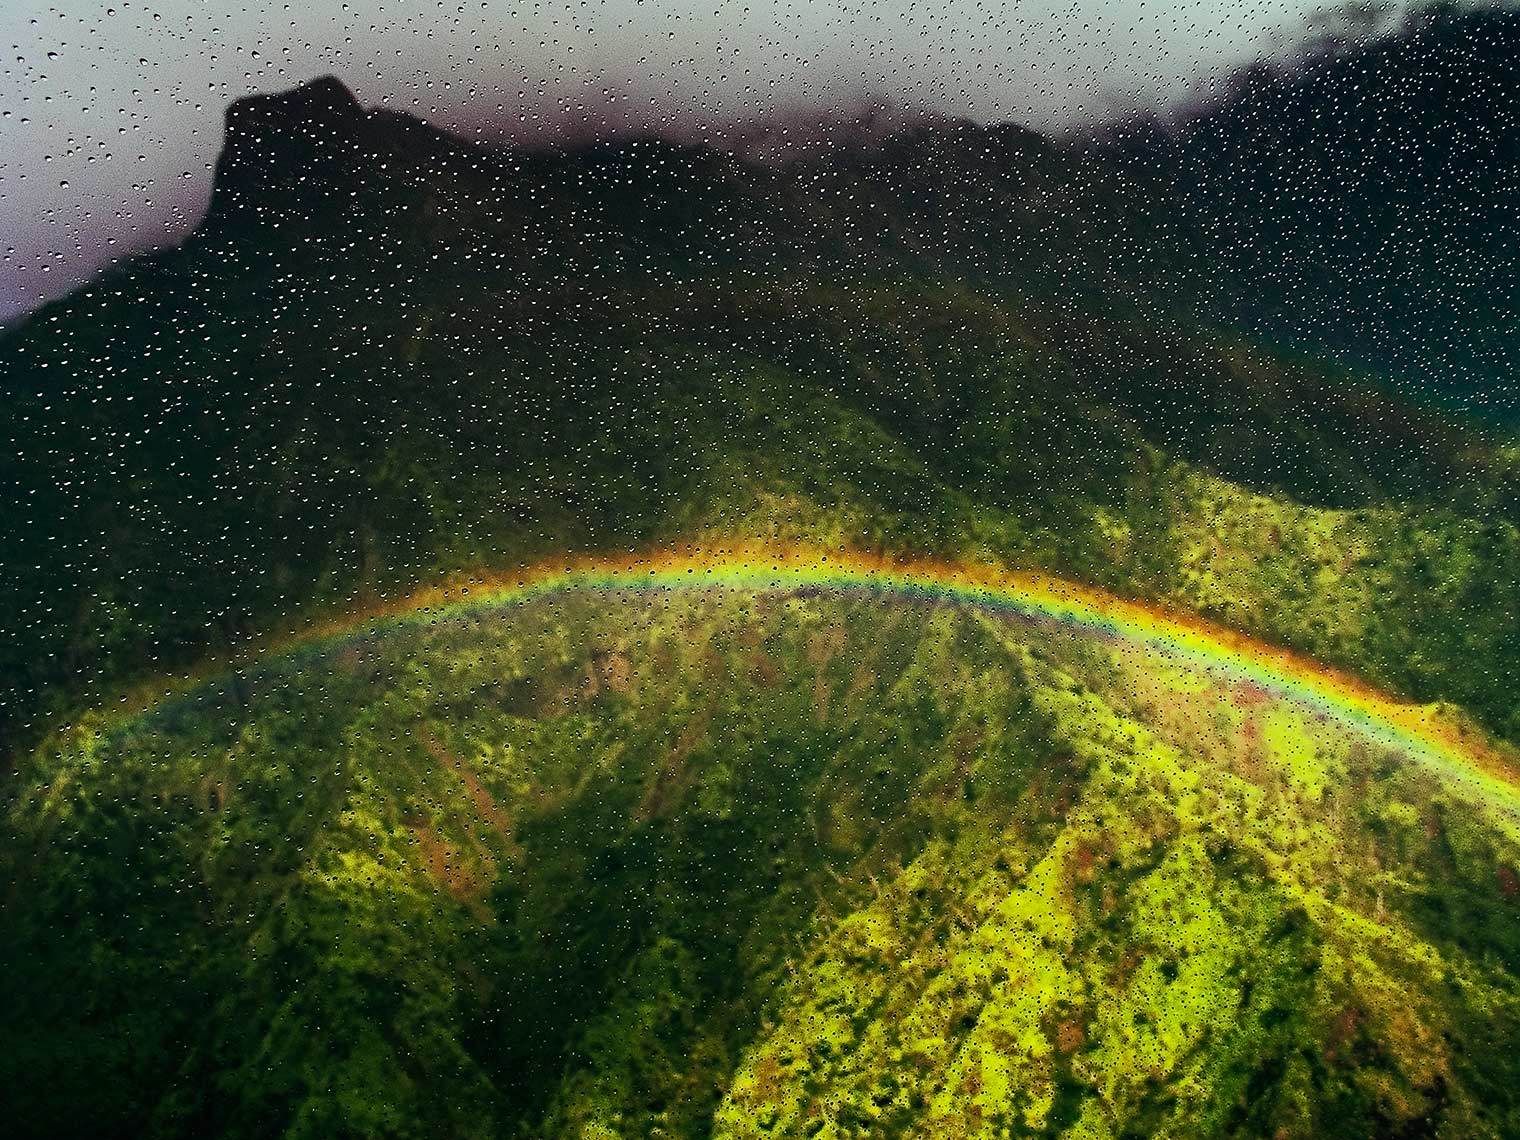 Mount Waialeale, Kauai, Hawaii